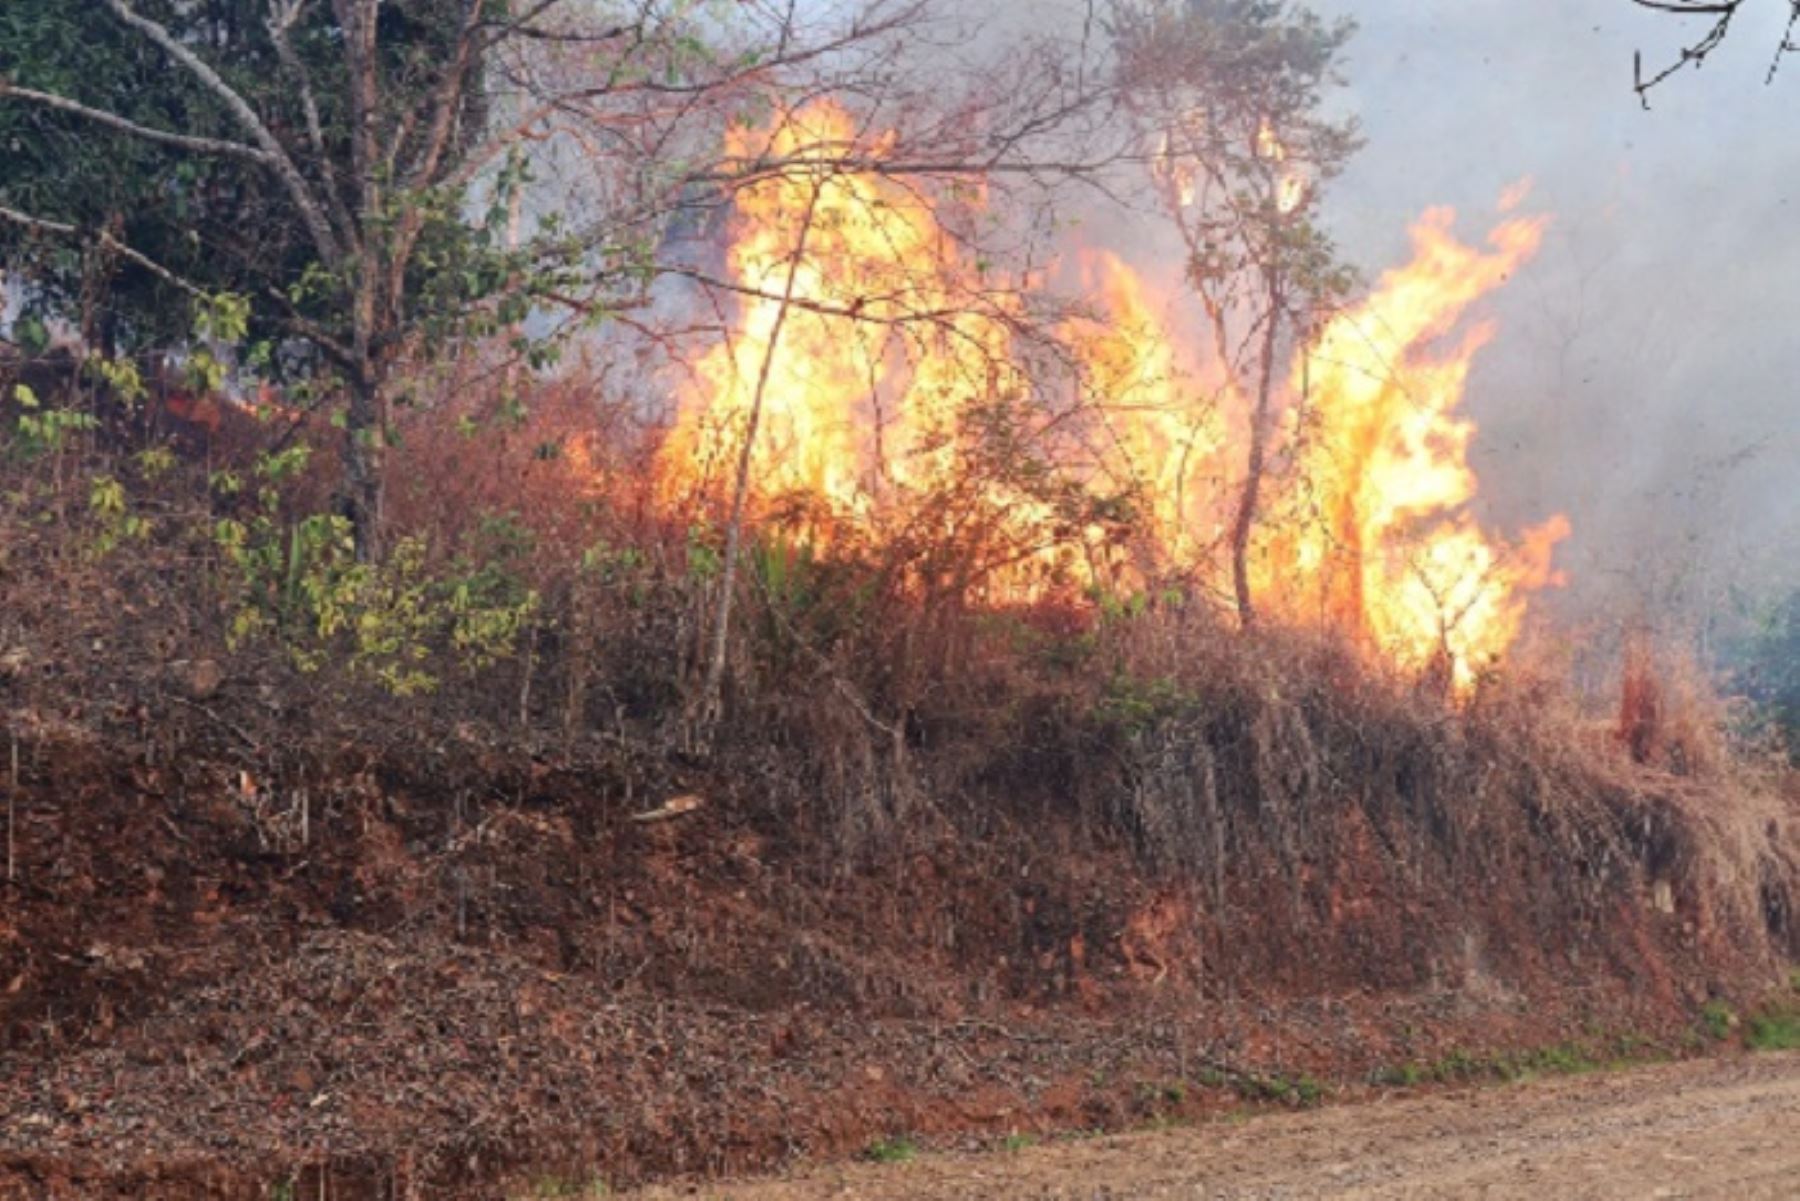 Este nuevo incendio forestal es el segundo registrado en menos de una semana en Echarate. El primero fue controlado en Pampa Concepción y Pan de Azúcar con la ayuda del Ejército y la municipalidad provincial de La Convención.